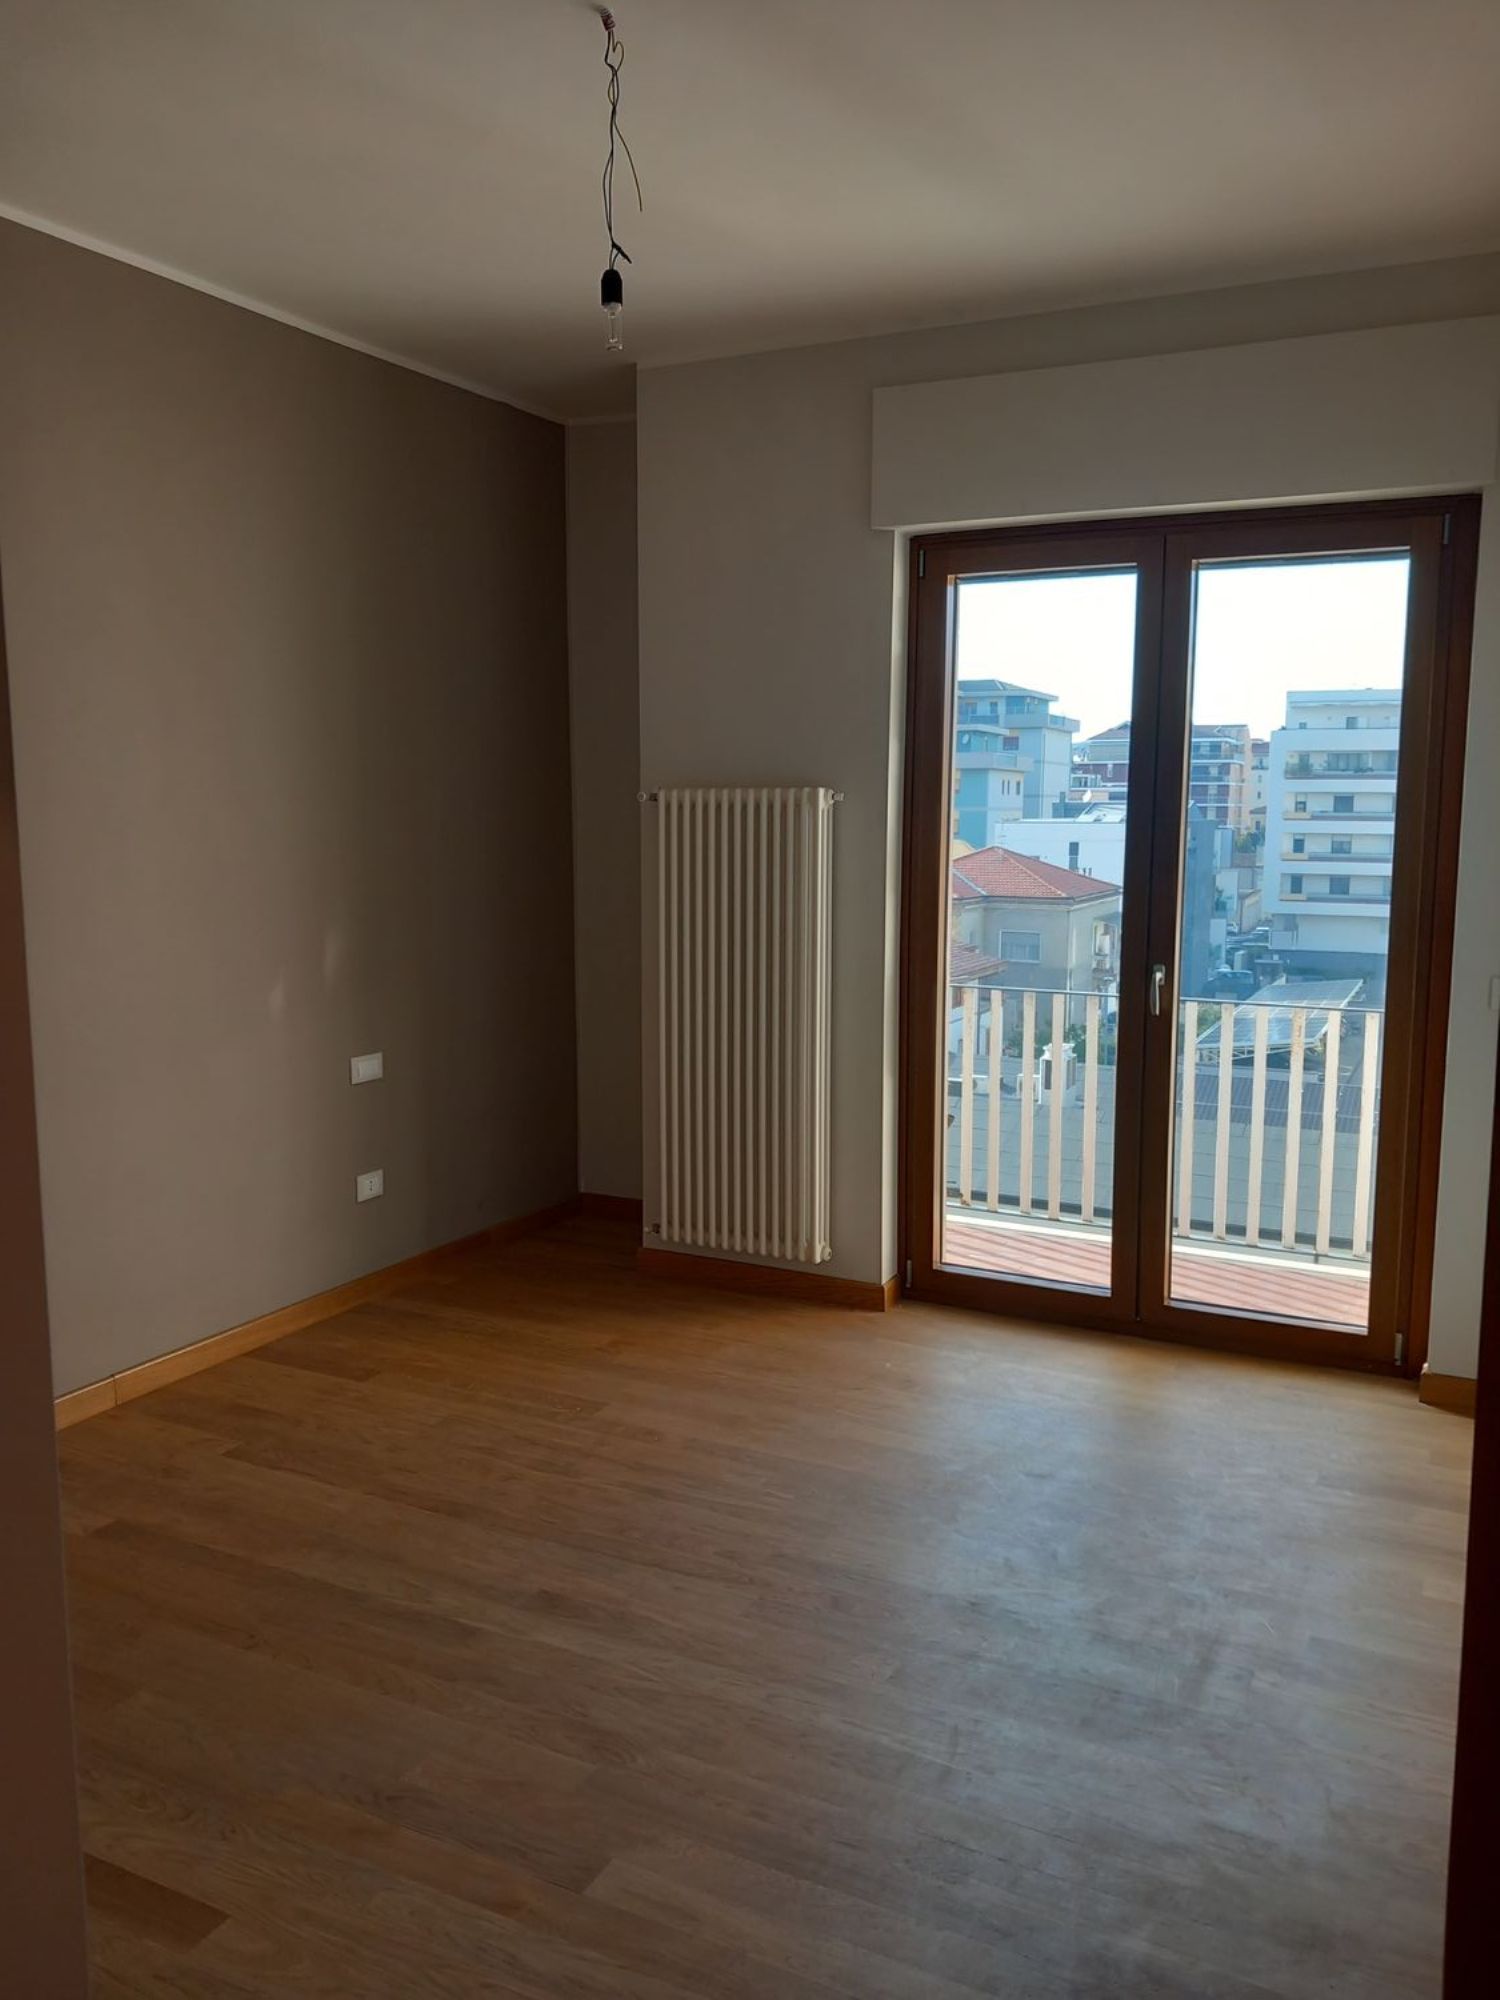 Appartamento in vendita a Pescara, 3 locali, prezzo € 195.000 | PortaleAgenzieImmobiliari.it